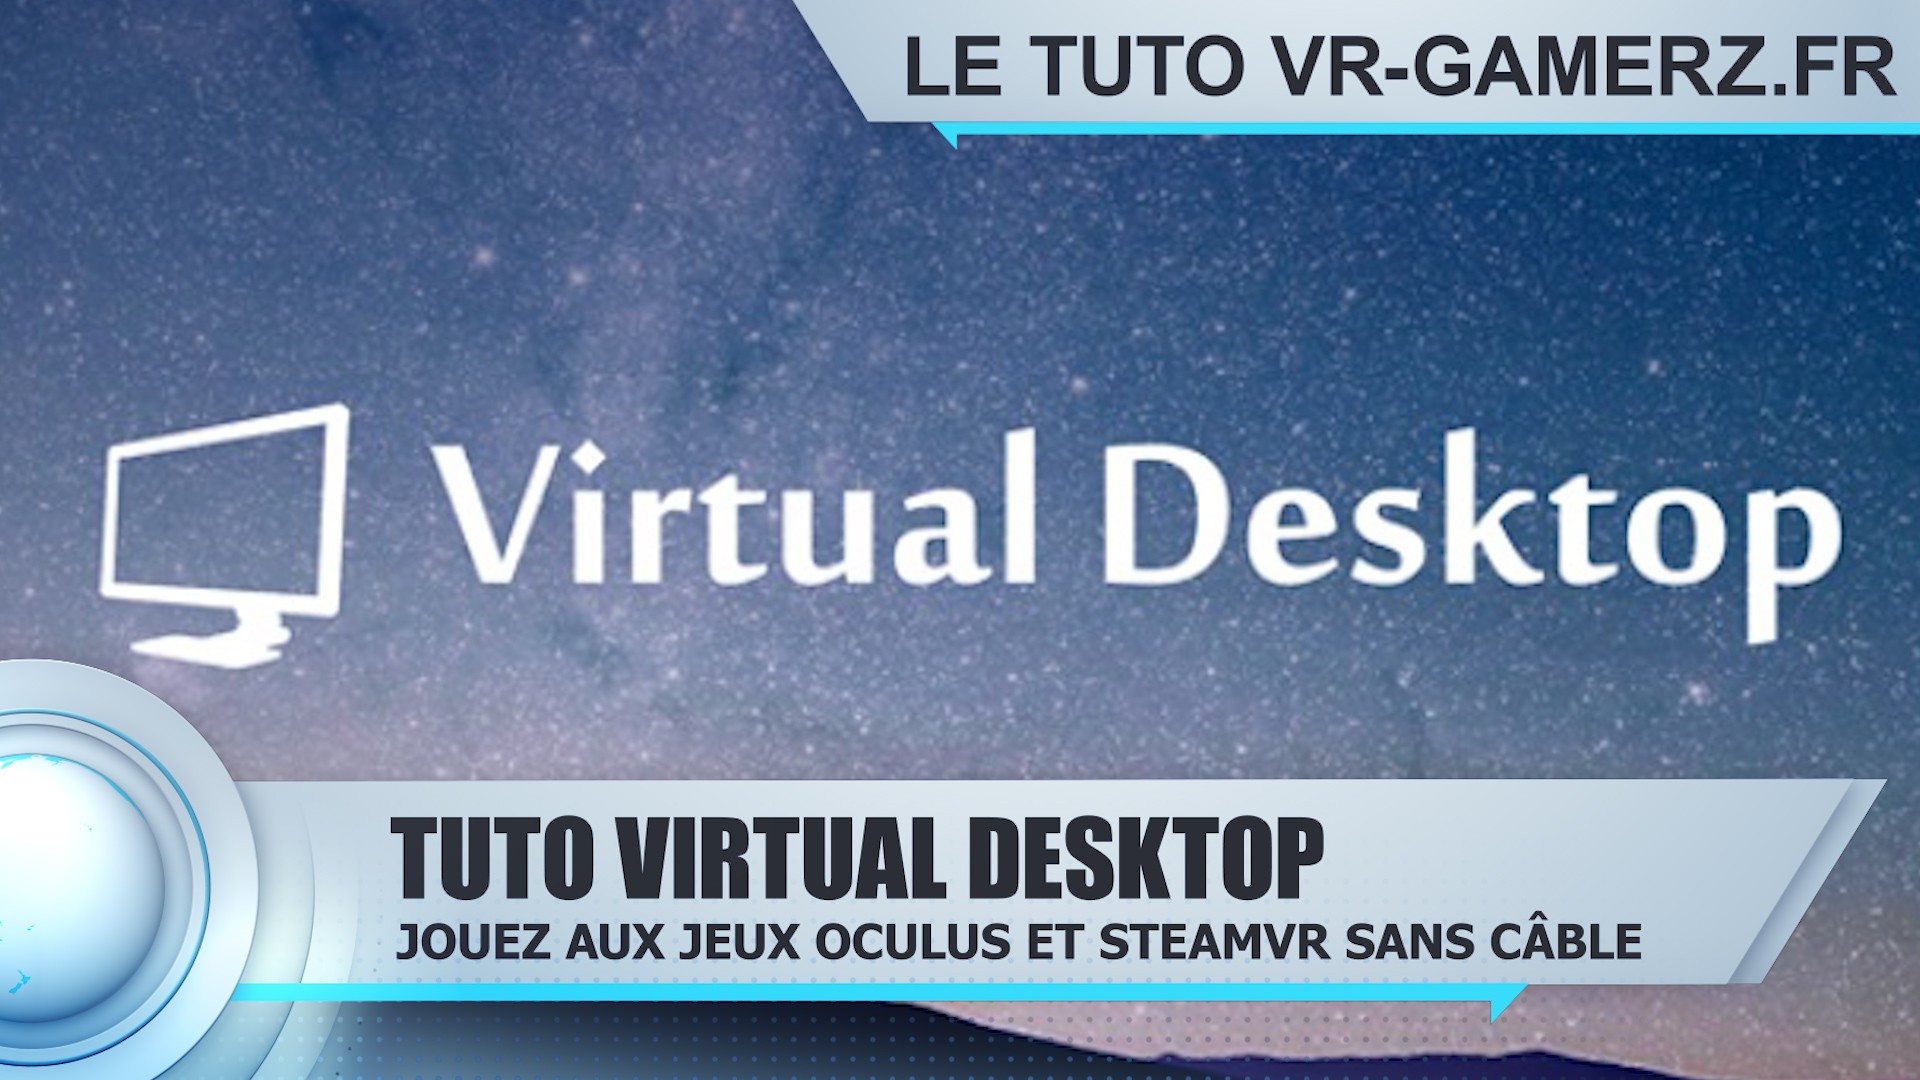 Tuto Virtual desktop Oculus quest